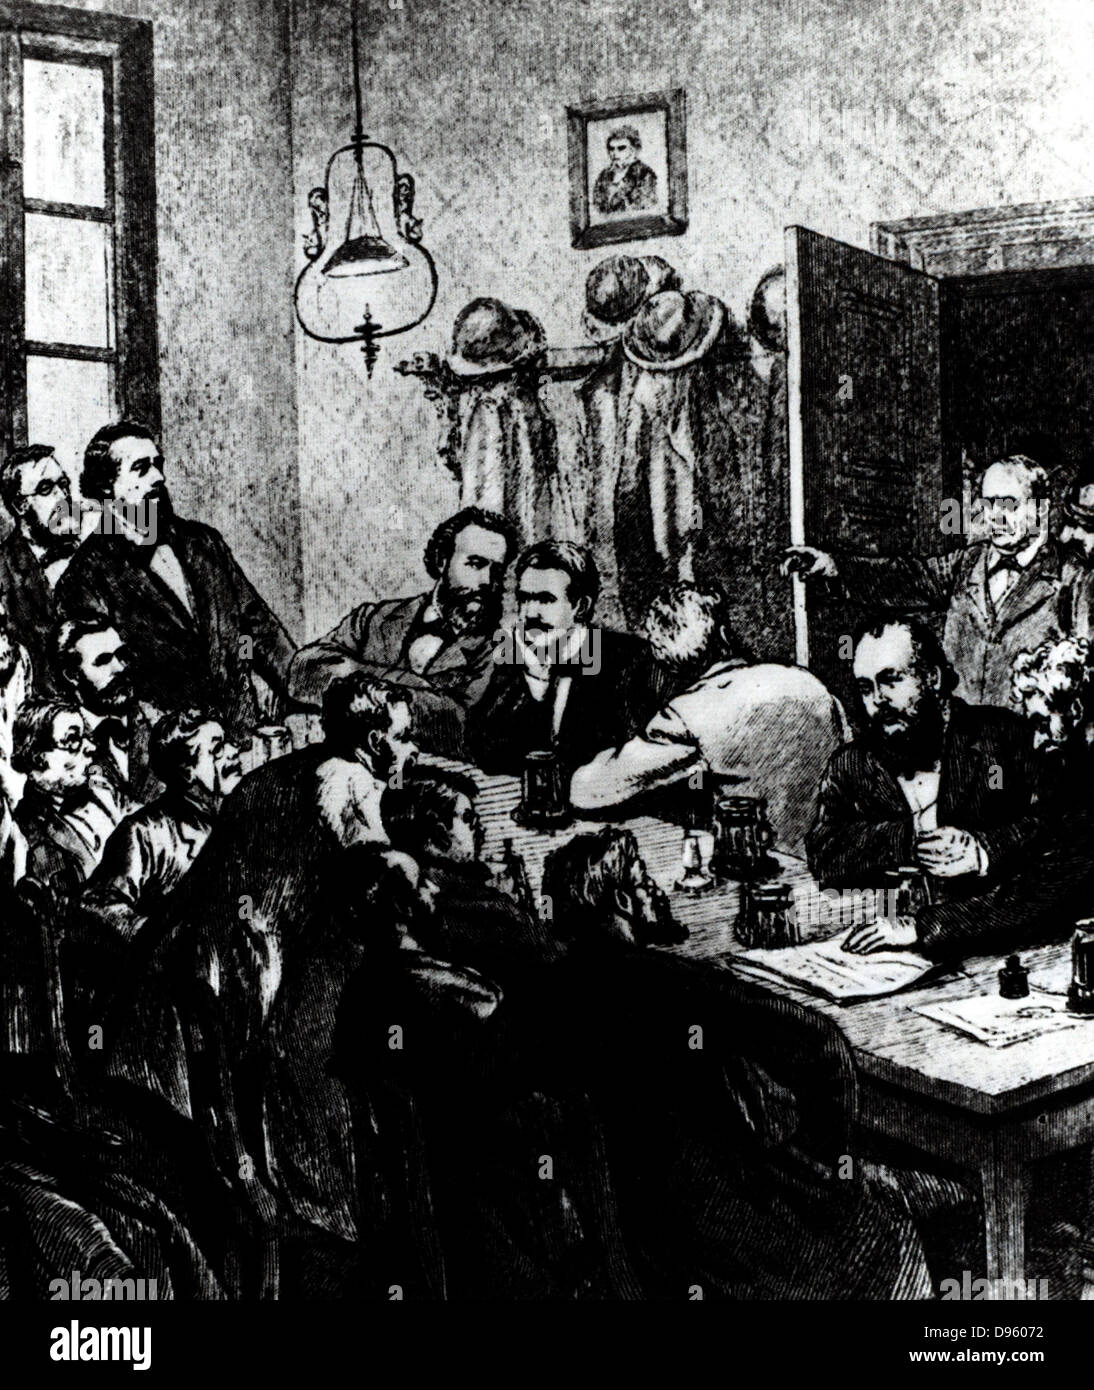 La rupture d'une séance d'une réunion des sociaux-démocrates, Leipzig, 1881. Parmi les participants étaient Wilhelm Liebknecht et August Bebel. La gravure. Banque D'Images